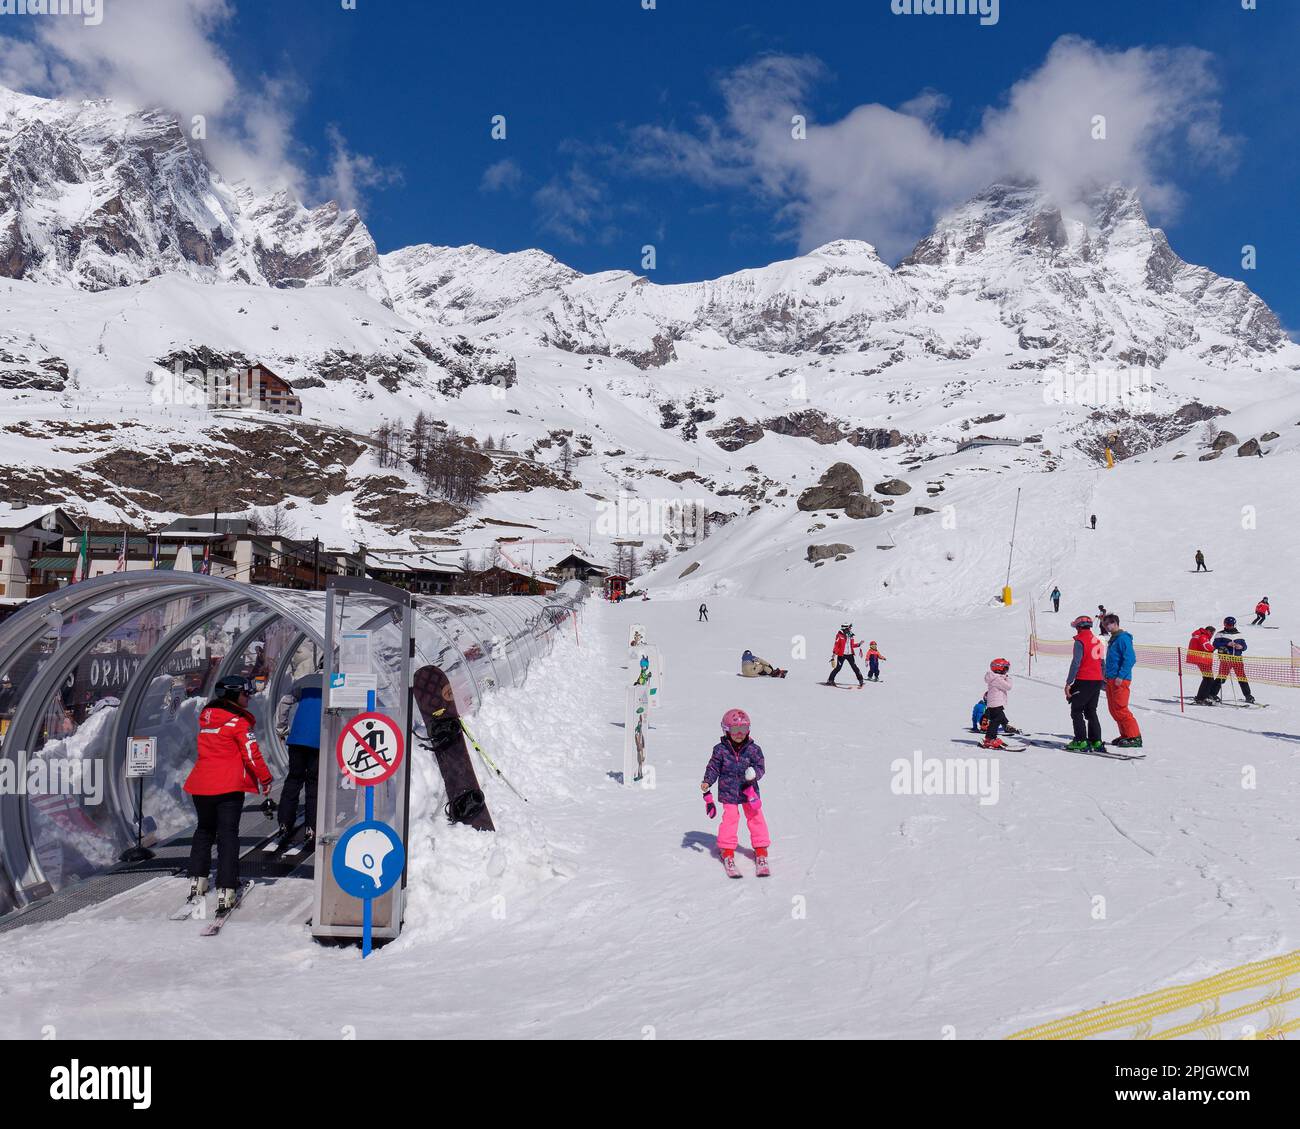 Les skieurs de la station de ski de Breuil-Cervinia, dans la vallée d'Aoste en Italie, avec une remontée mécanique en polytunnel et la montagne couverte de neige Cervino alias Matterhorn derrière. Banque D'Images